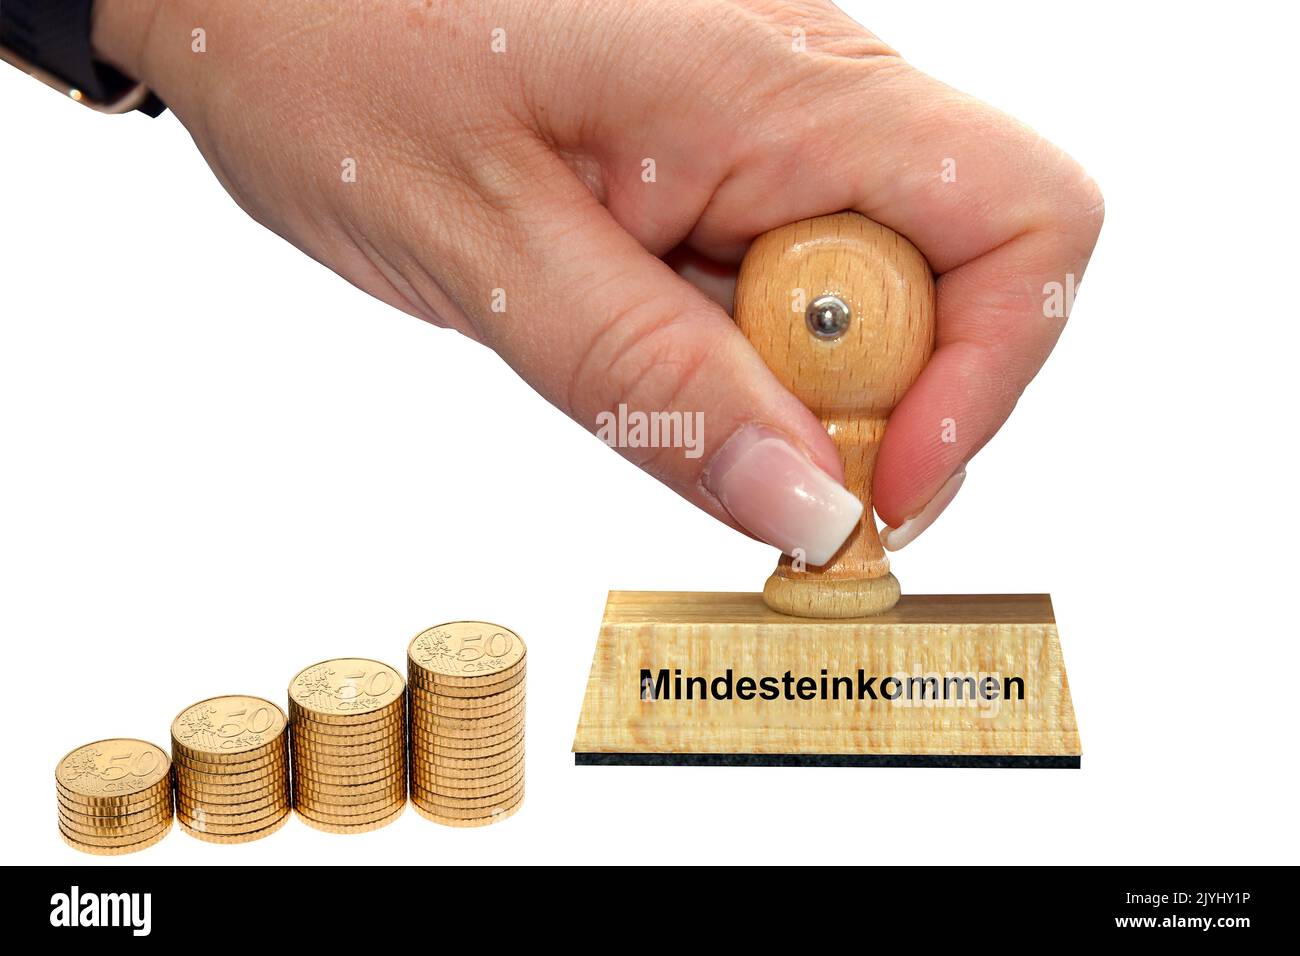 Main de femme avec cachet Mindesteinkommen, revenu minimum, découpé, Allemagne Banque D'Images